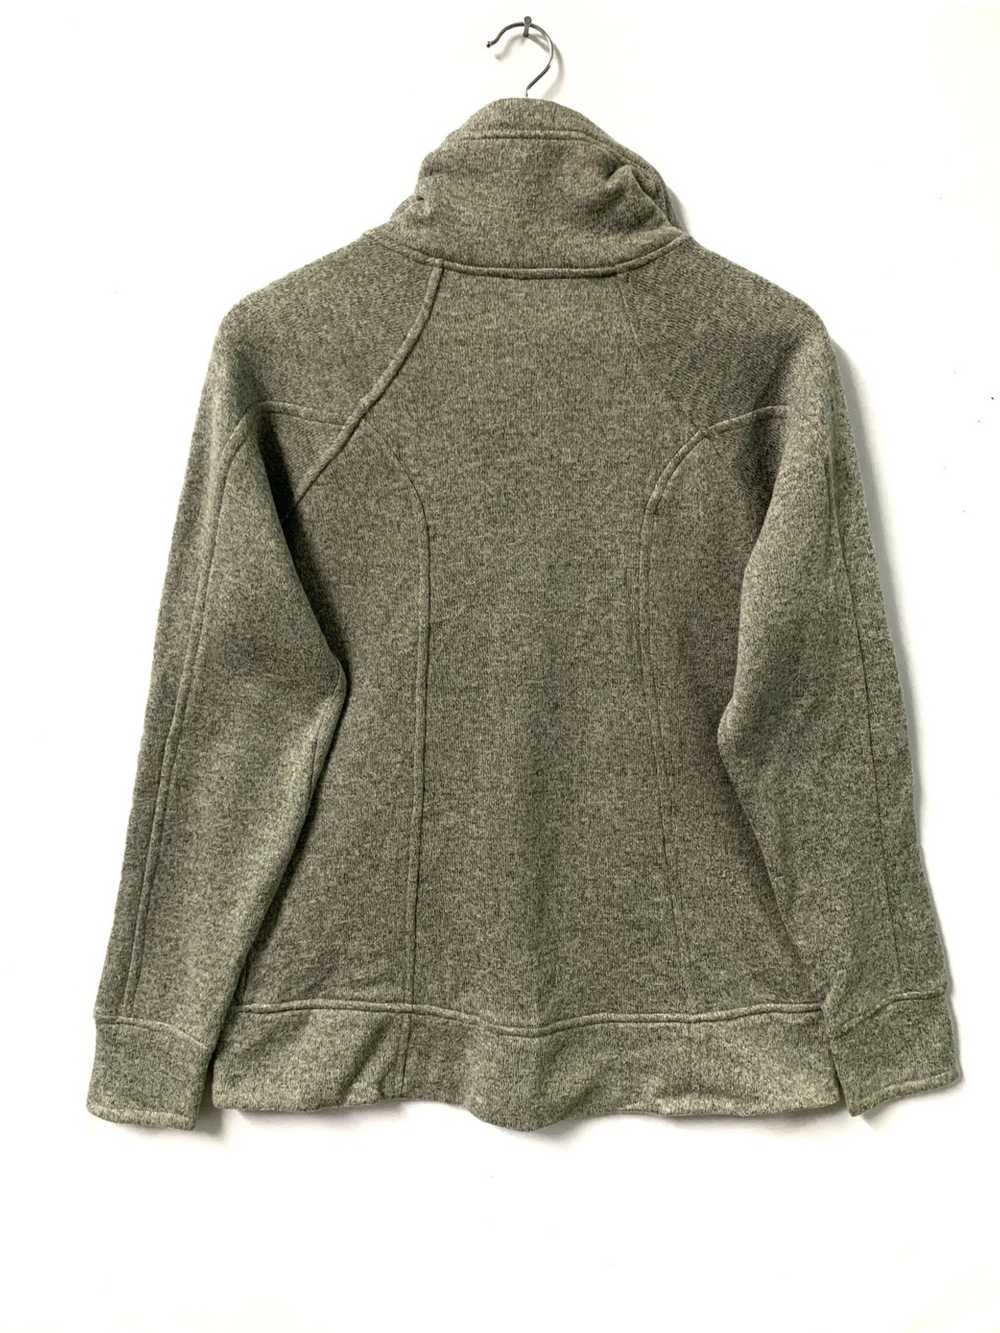 kuhl sweatshirt women size medium outdoor fleece full zip hoodie